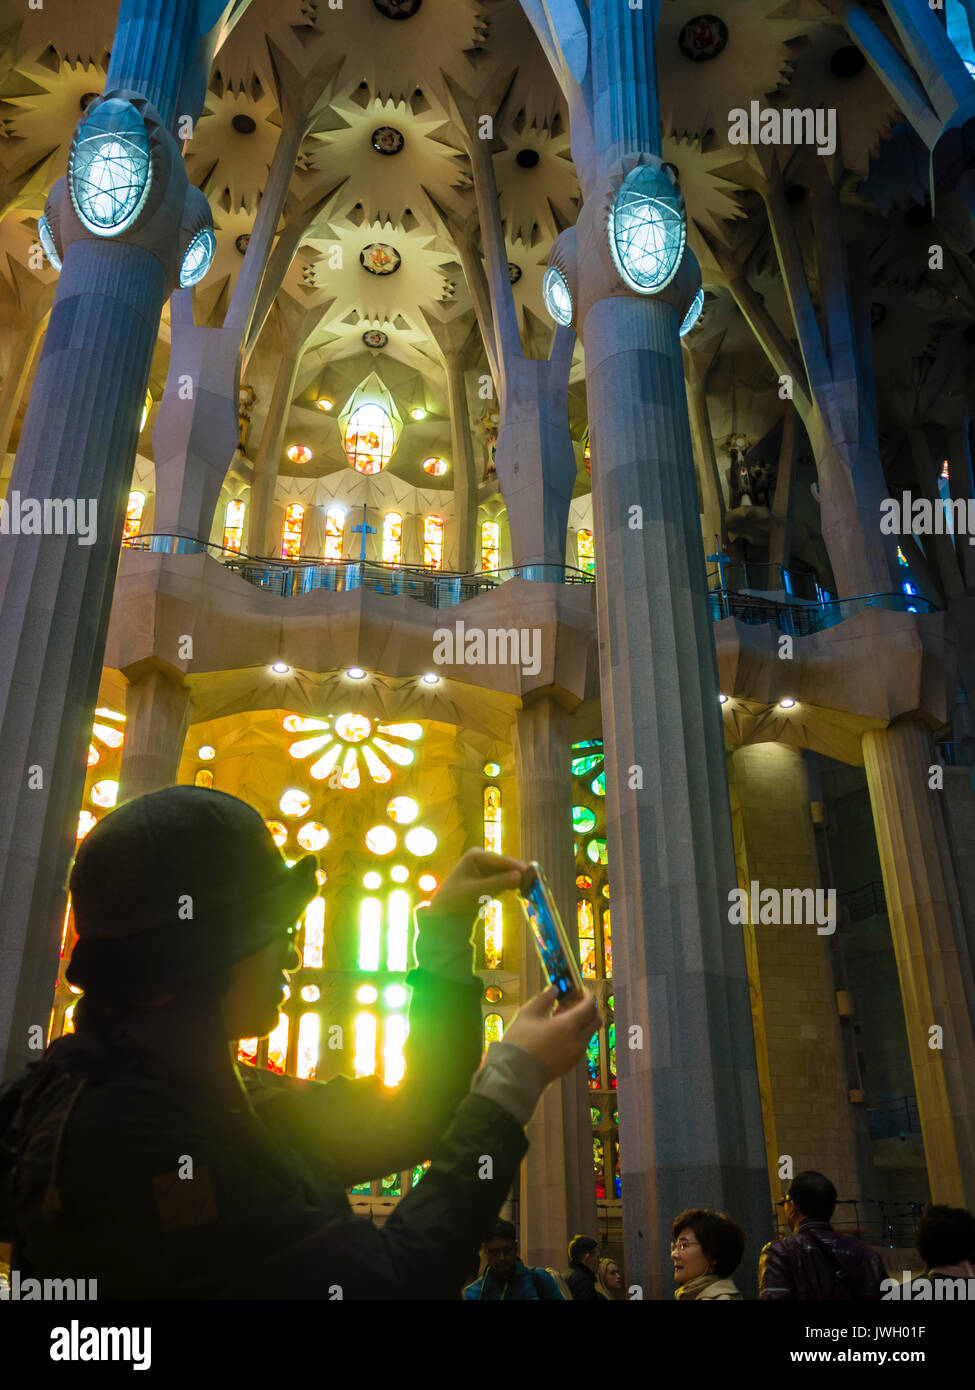 Eine asiatische Tourist ist das Aufnehmen von Fotos mit einem Smartphone innerhalb Barcelonas Kathedrale Sagrada Familia, die mit Besuchern aus der ganzen wor voll ist Stockfoto